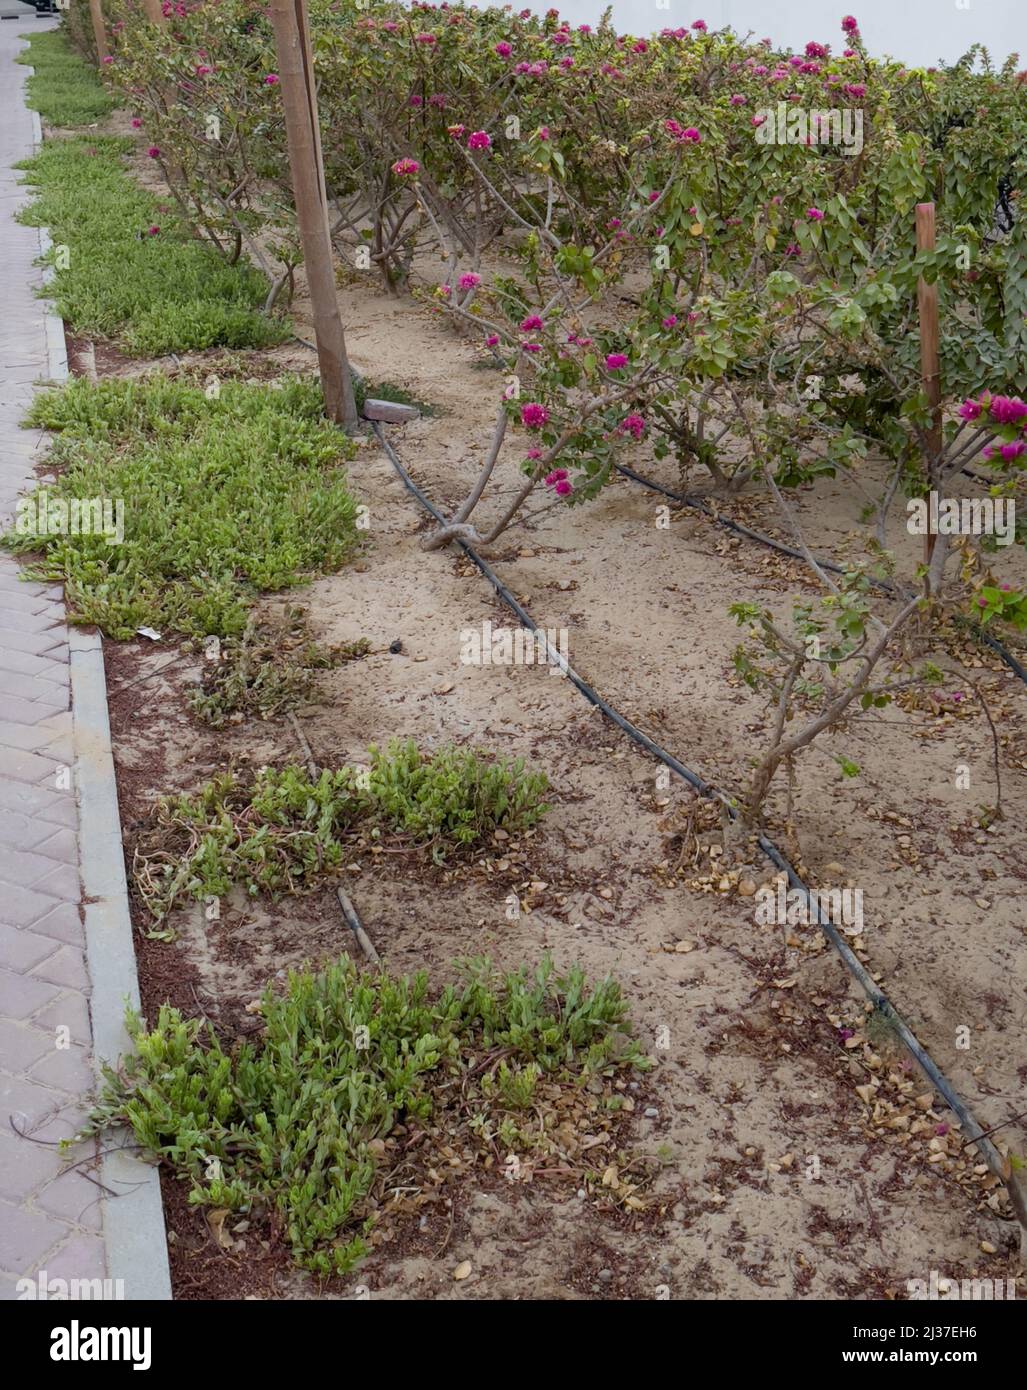 Sistema de riego por goteo utilizado para el paisajismo en el lado de un camino. Foto de stock